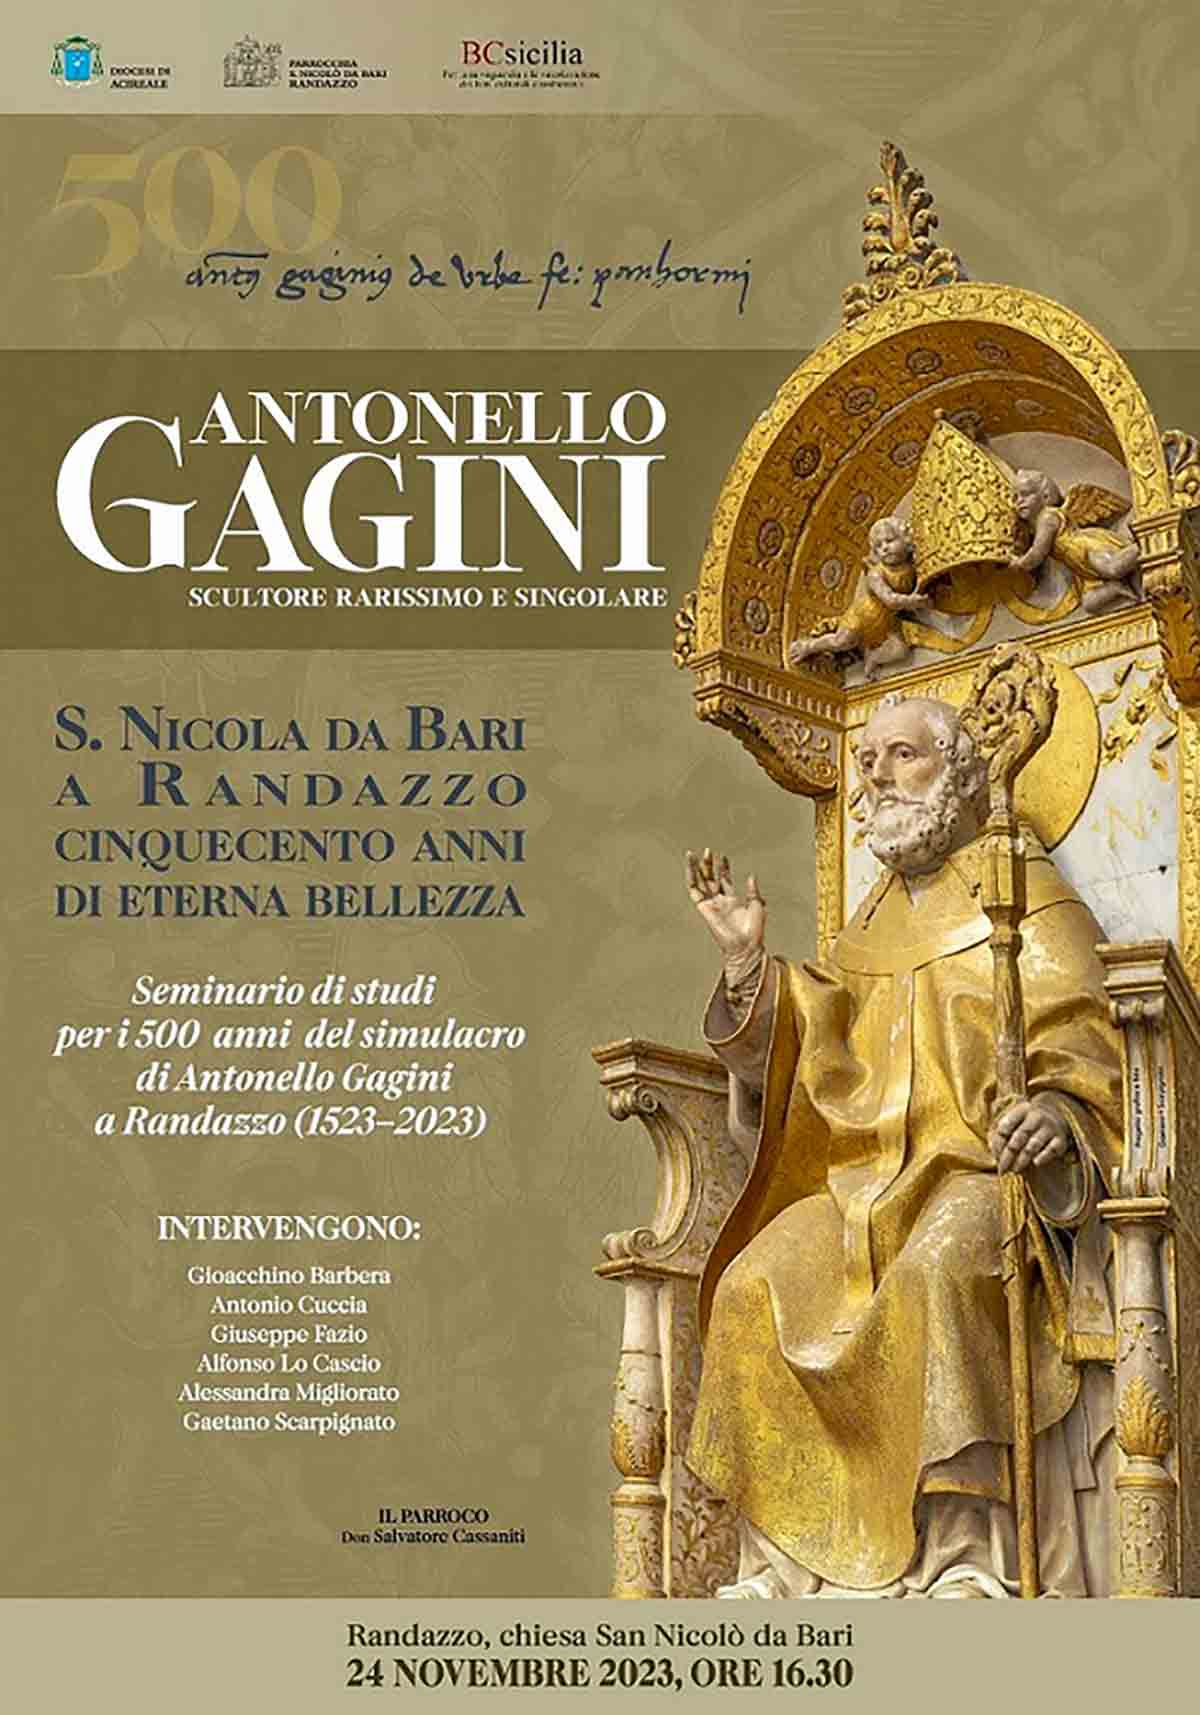 Randazzo - Locandina 500° anniversario San Nicola da Bari di Antonello Gagini